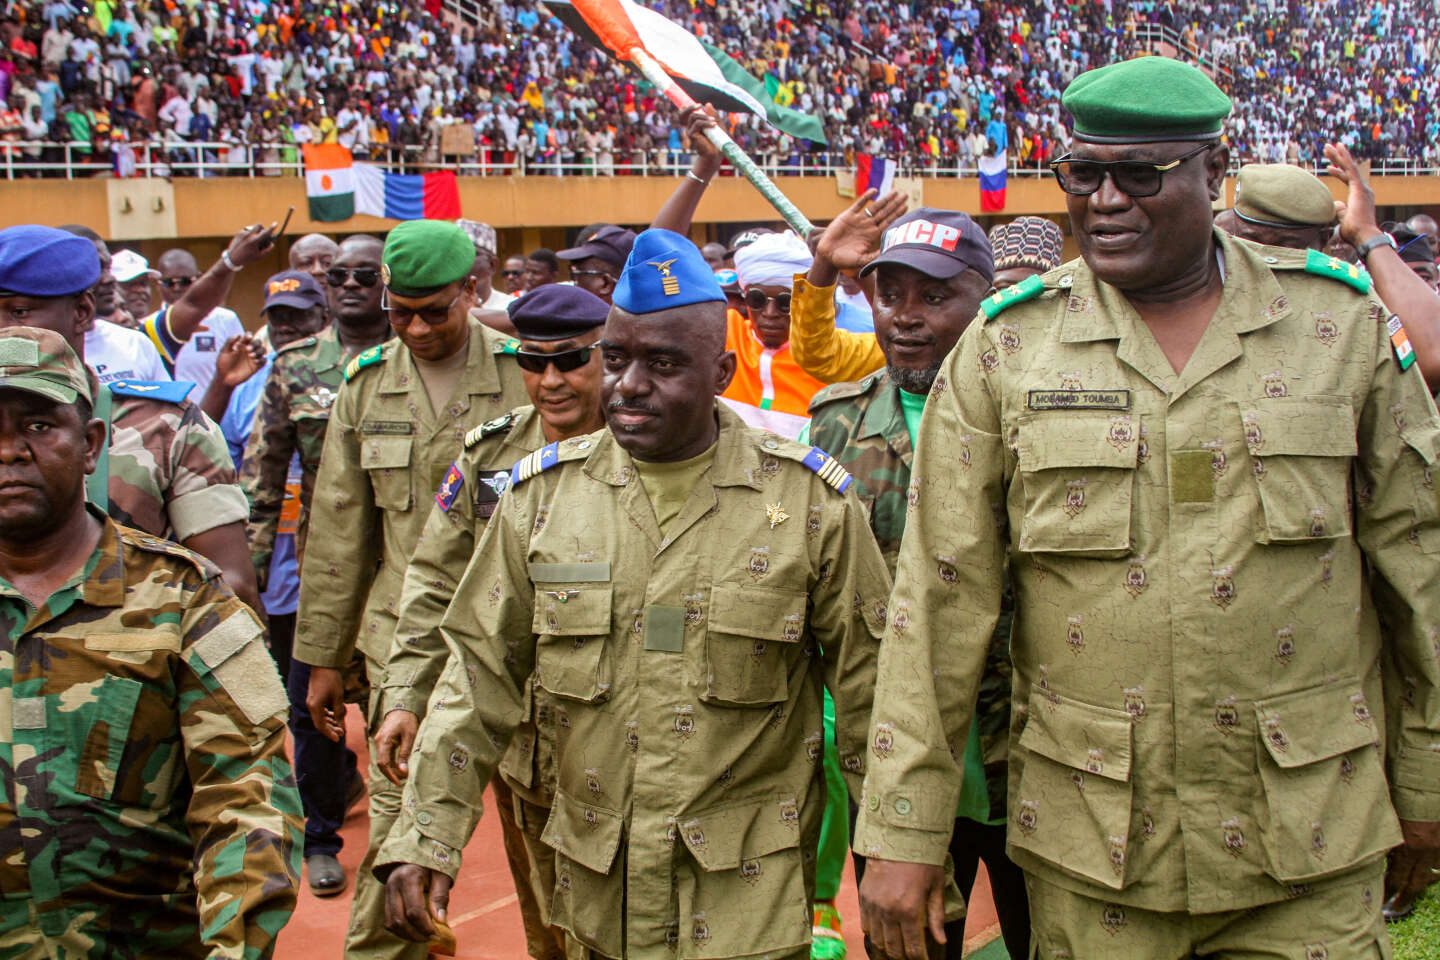 Níger ha anunciado que pondrá fin a la cooperación militar con Estados Unidos.